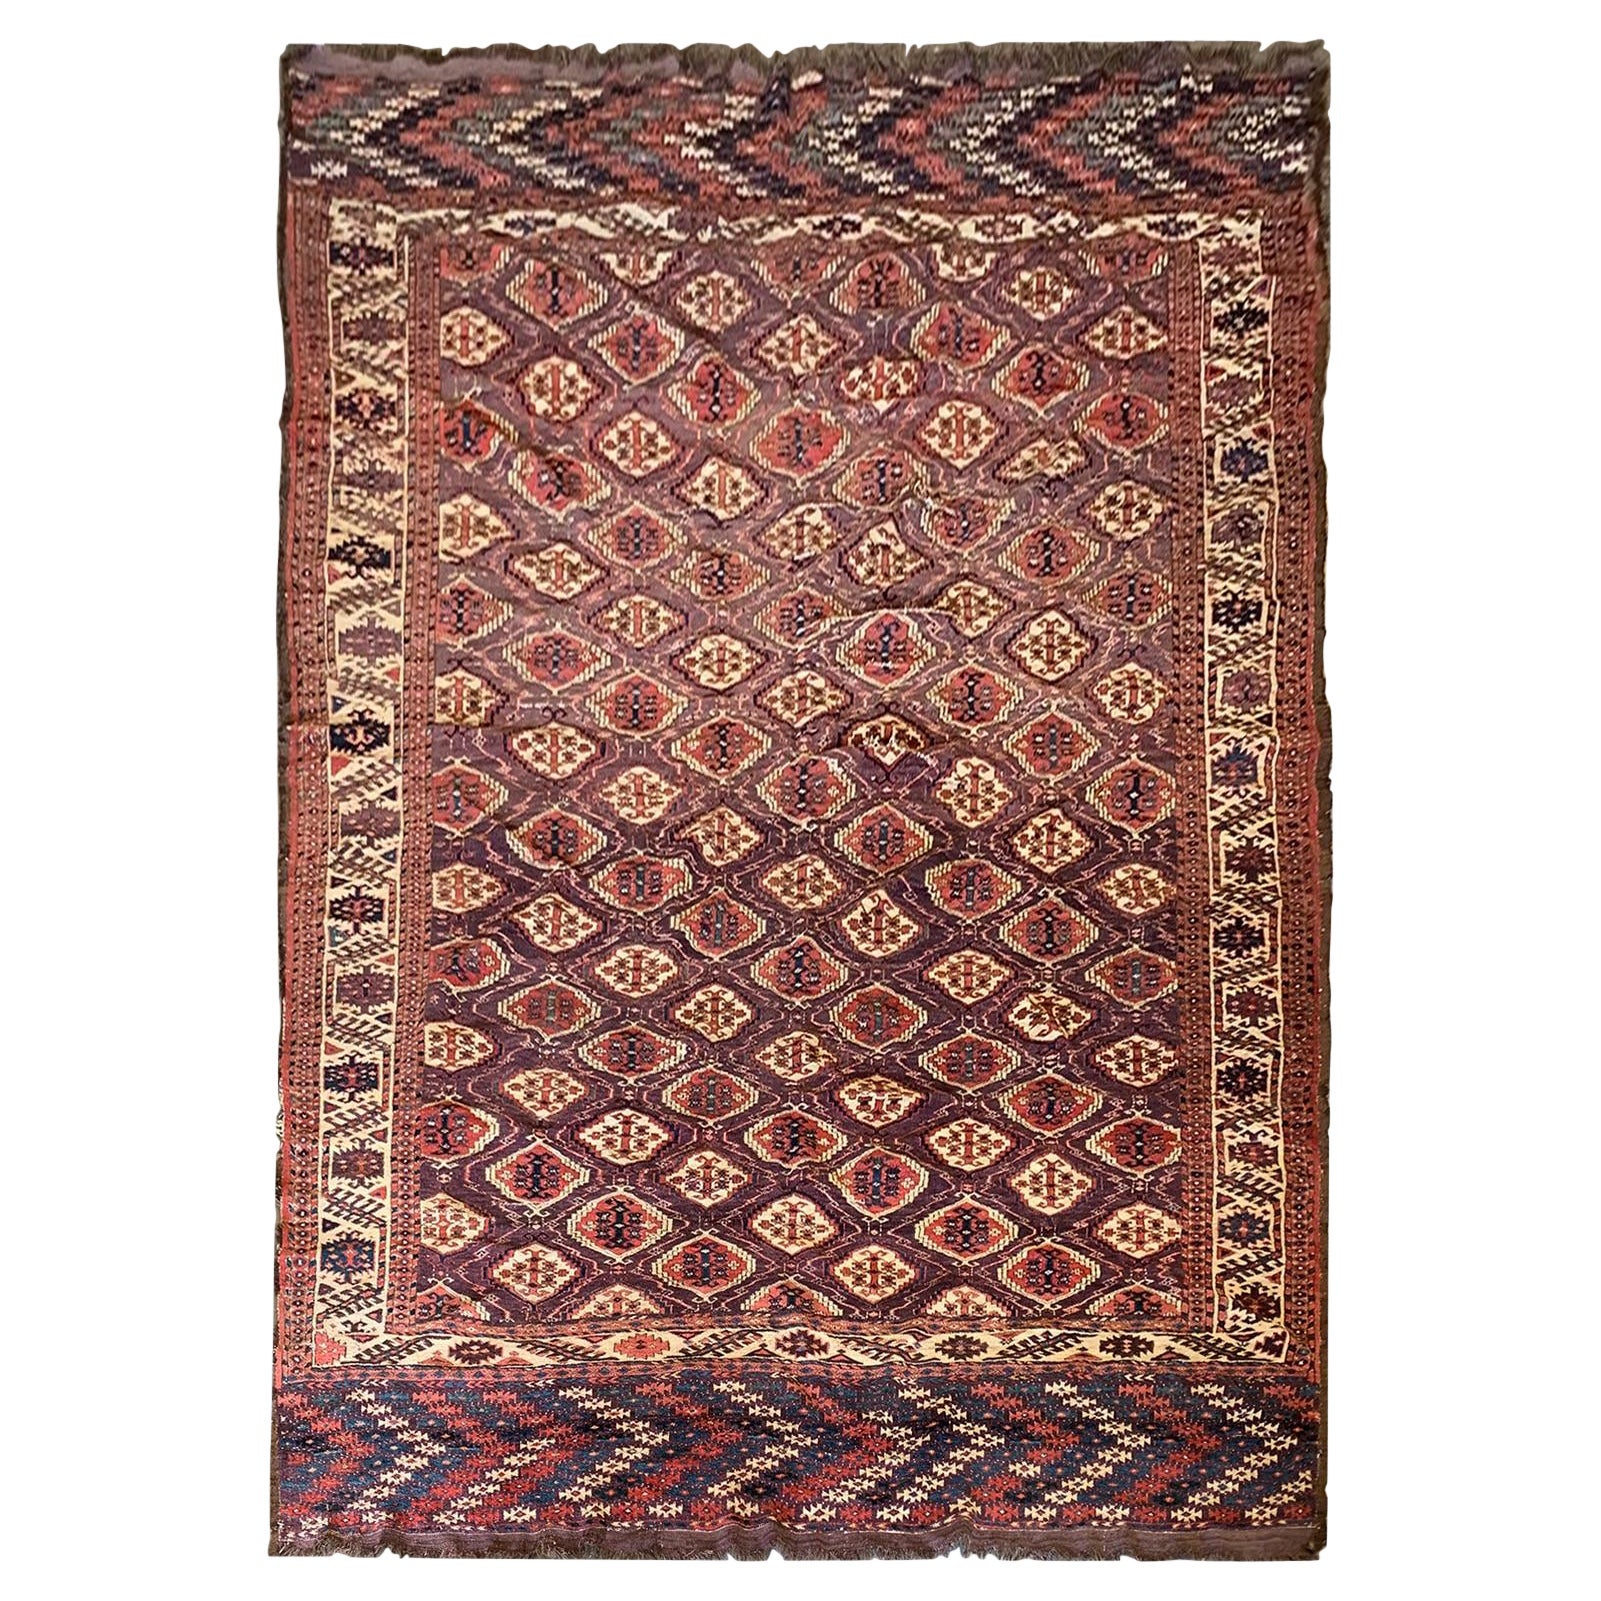 Antique Turkmen rug, Red All Over Design Carpet For Sale